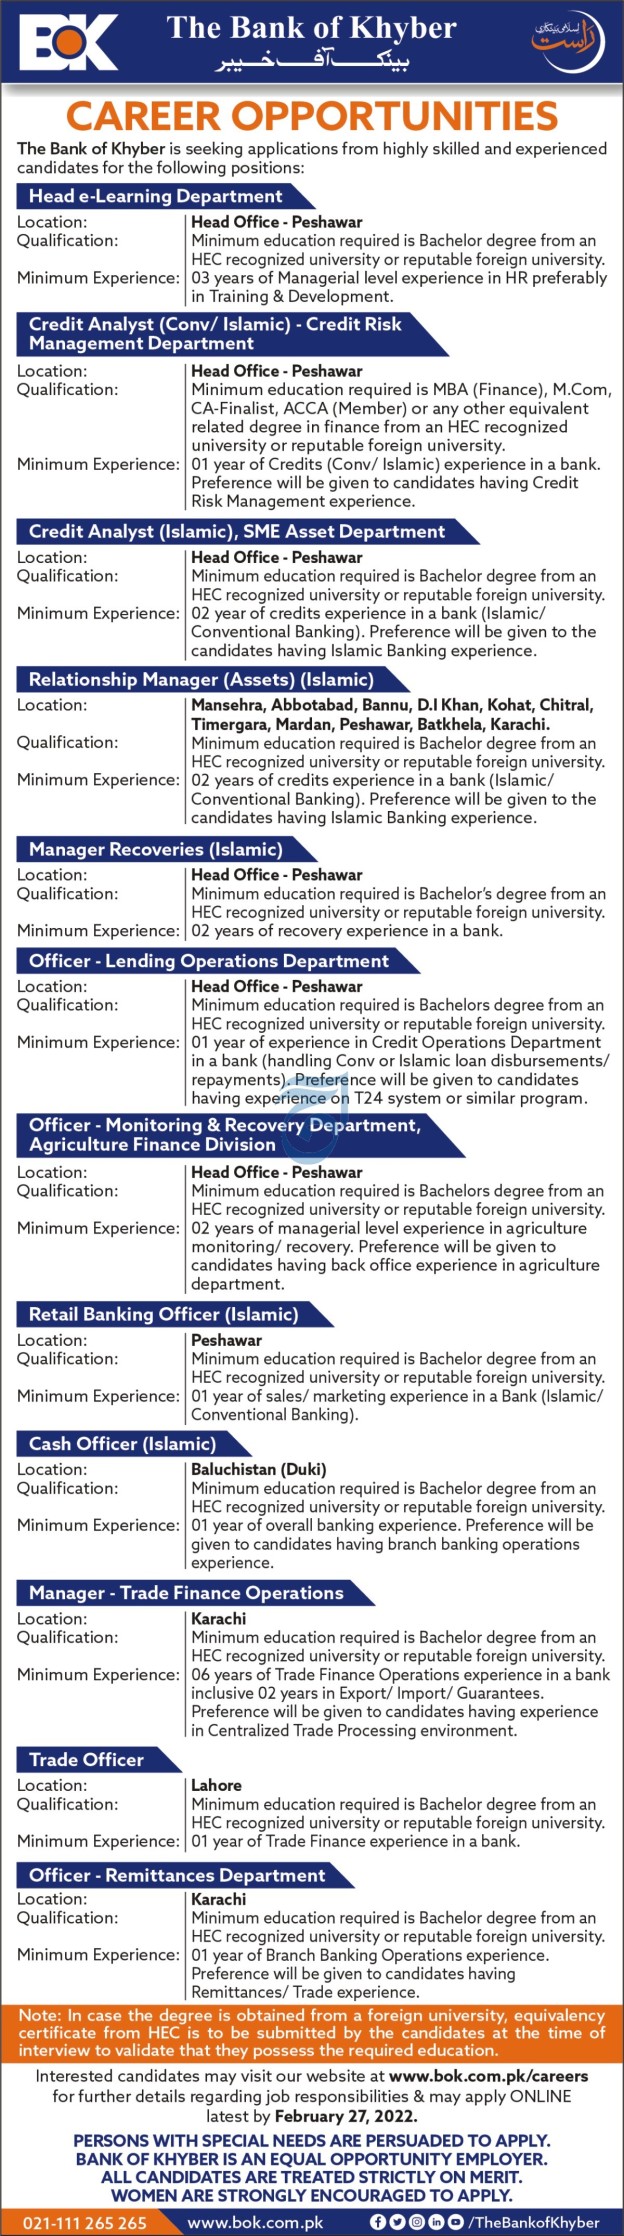 Bank of Khyber BOK Jobs 2022 – Apply Online via www.bok.com.pk